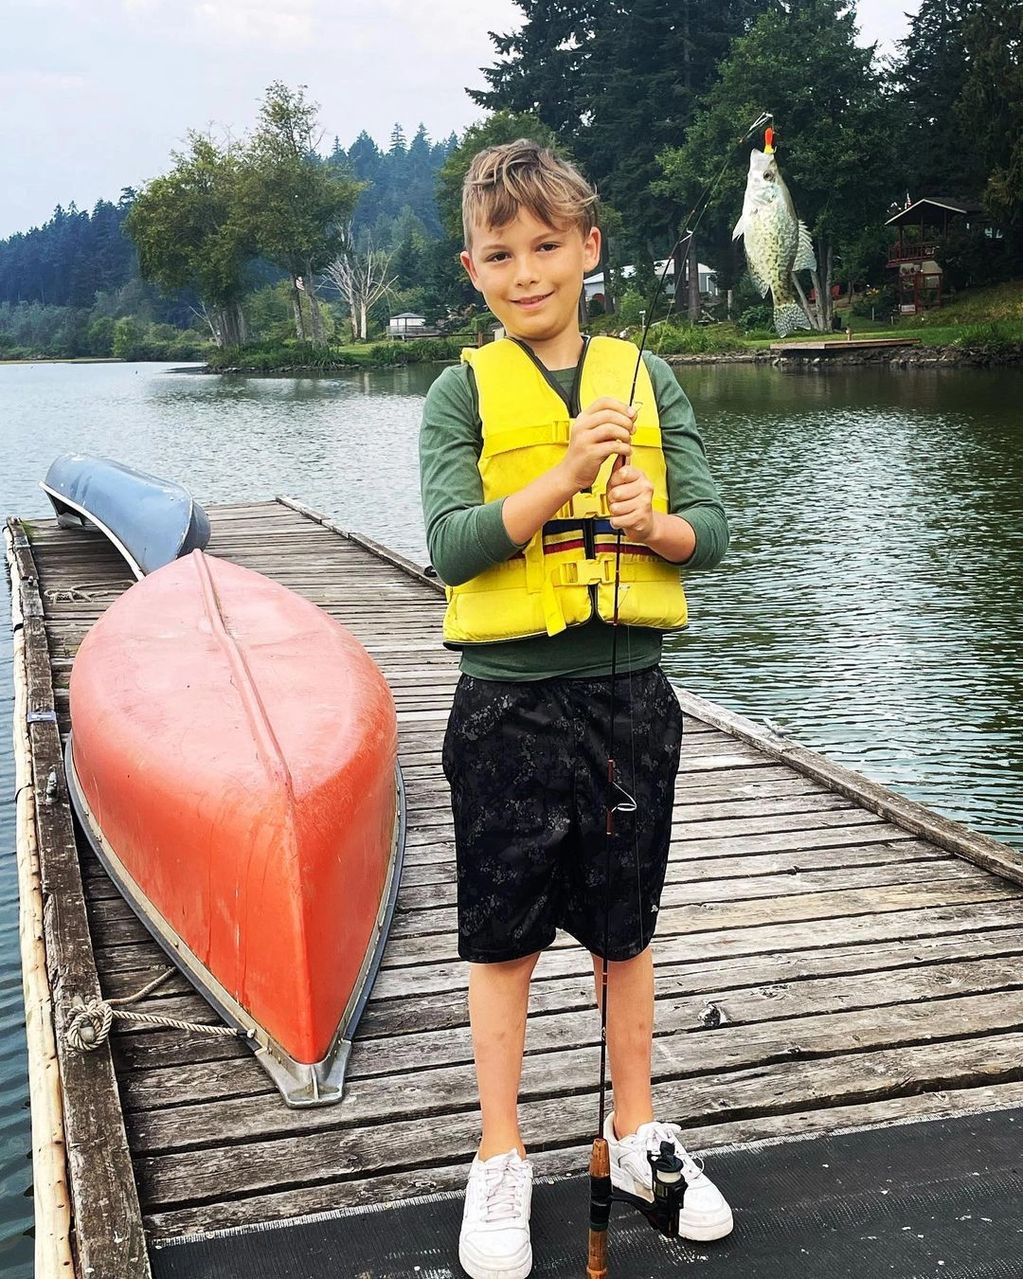 A boy caught a fish at Silver Lake Resort, WA.